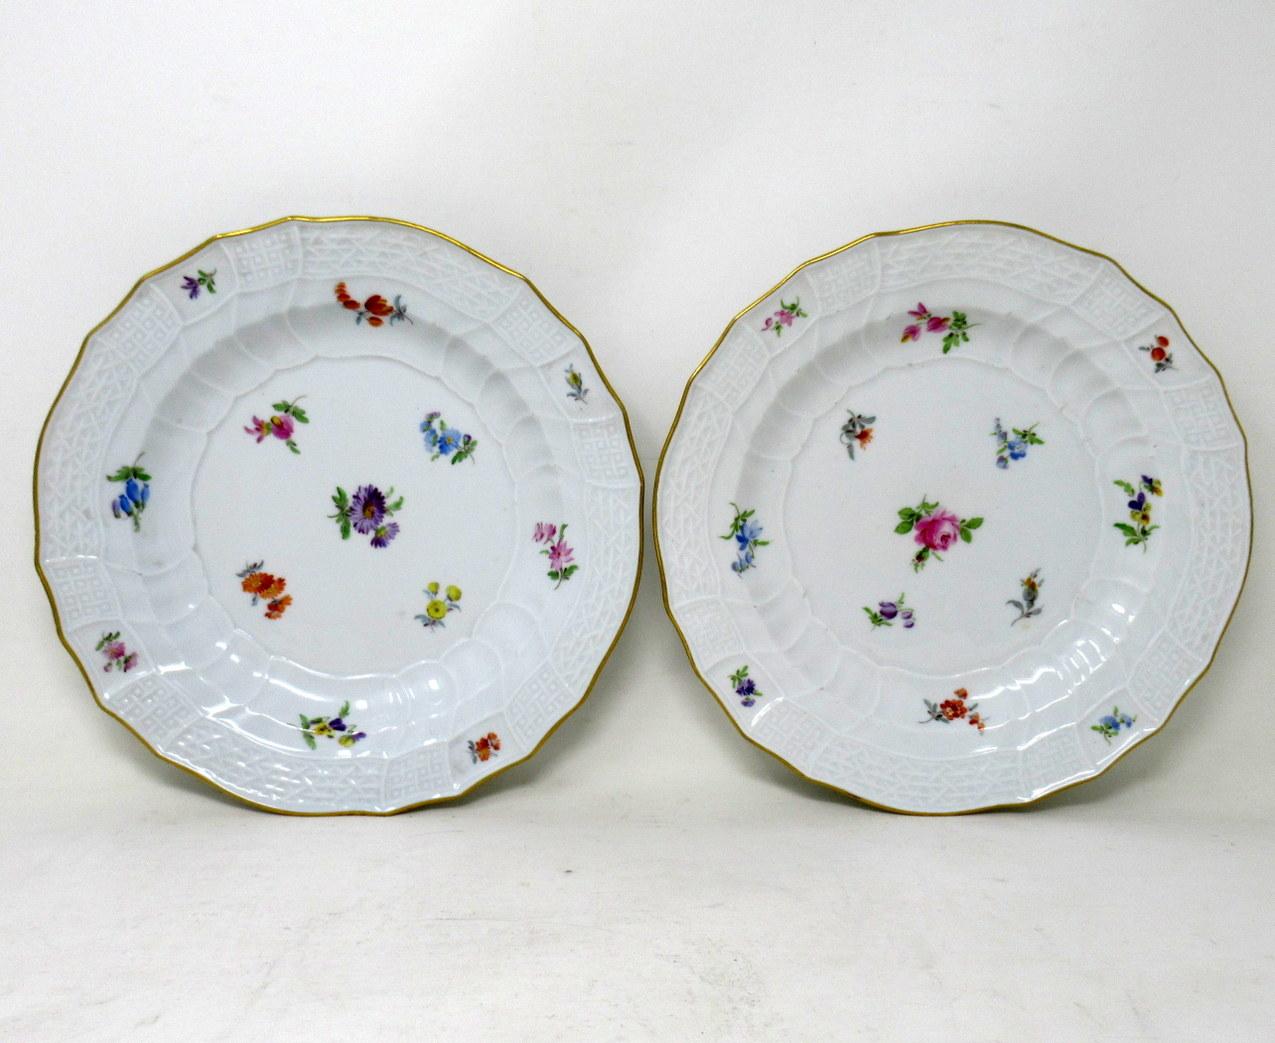 Un ensemble exceptionnellement rare de deux assiettes de cabinet en porcelaine allemande de Meissen à thème floral, de forme circulaire, du dernier quart du dix-neuvième siècle. 

Chaque réserve centrale est exquisément peinte à la main de vues